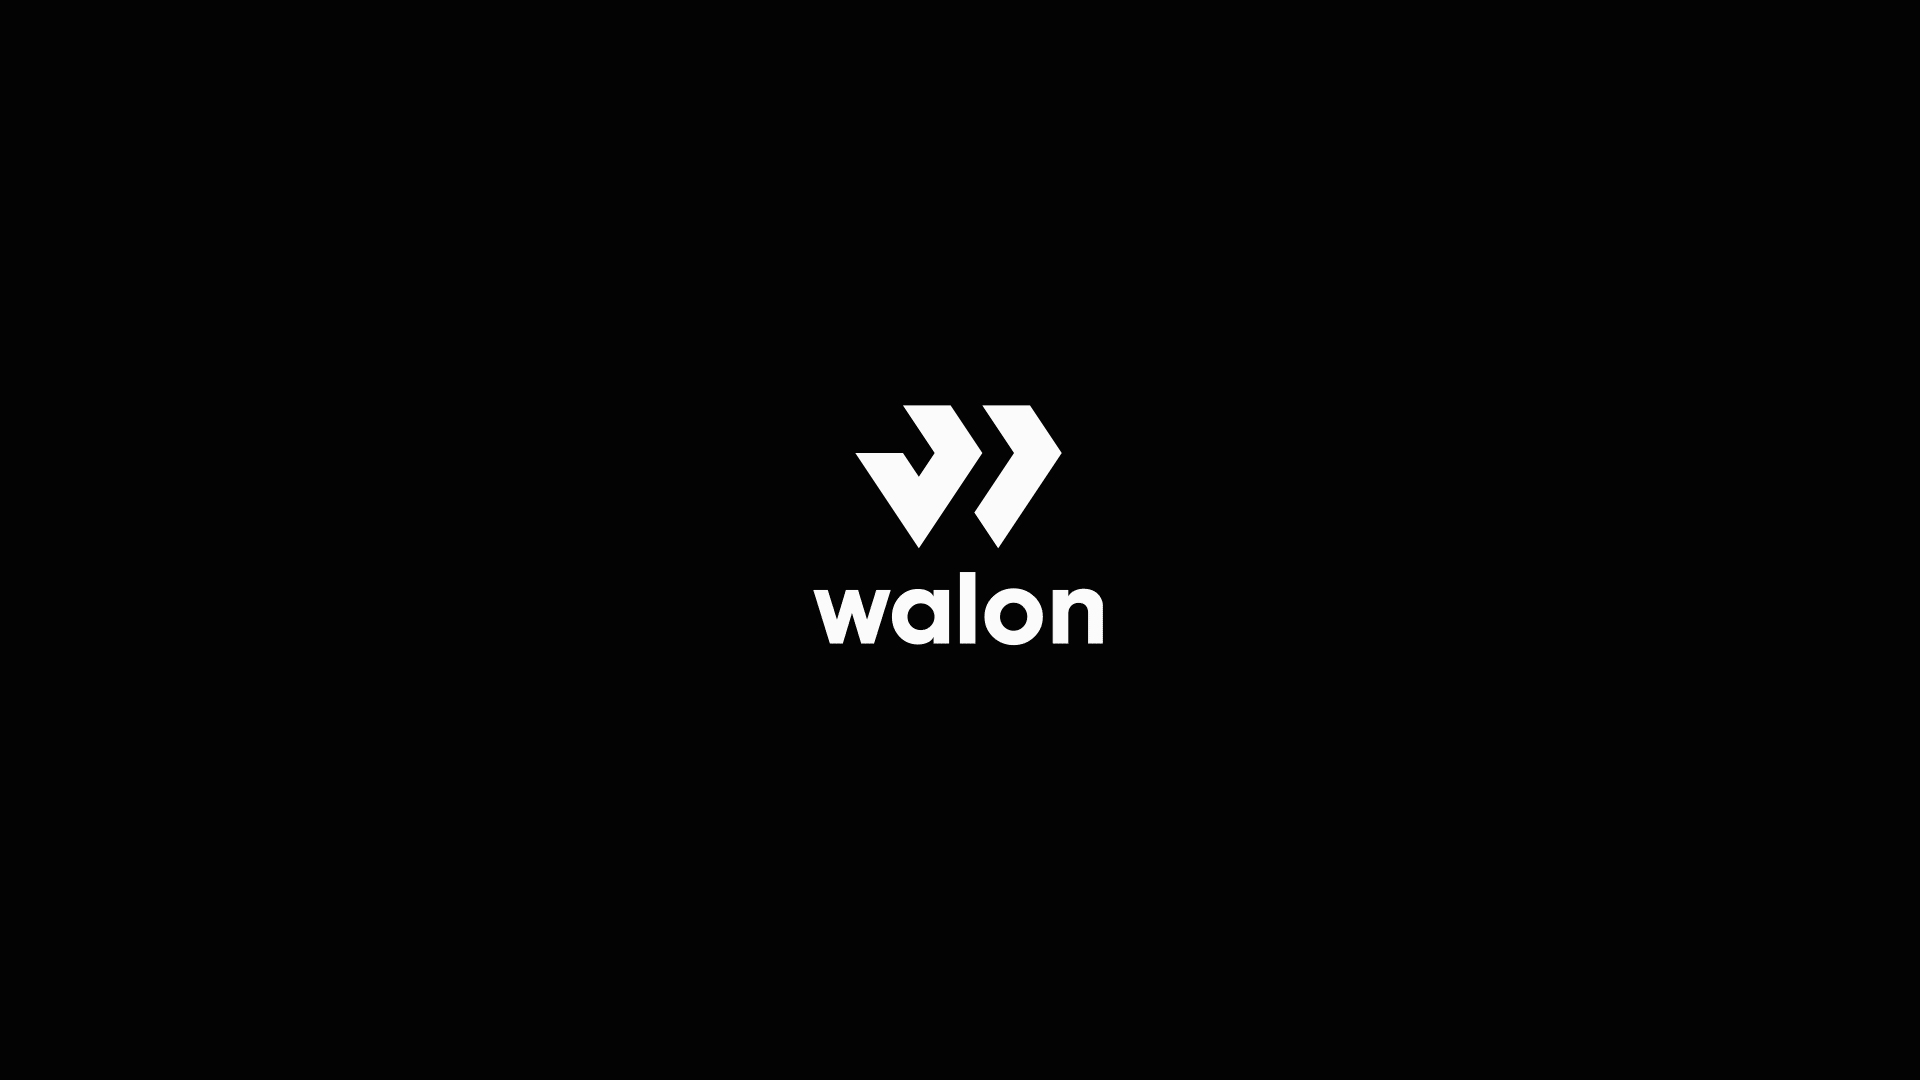 walon logo1